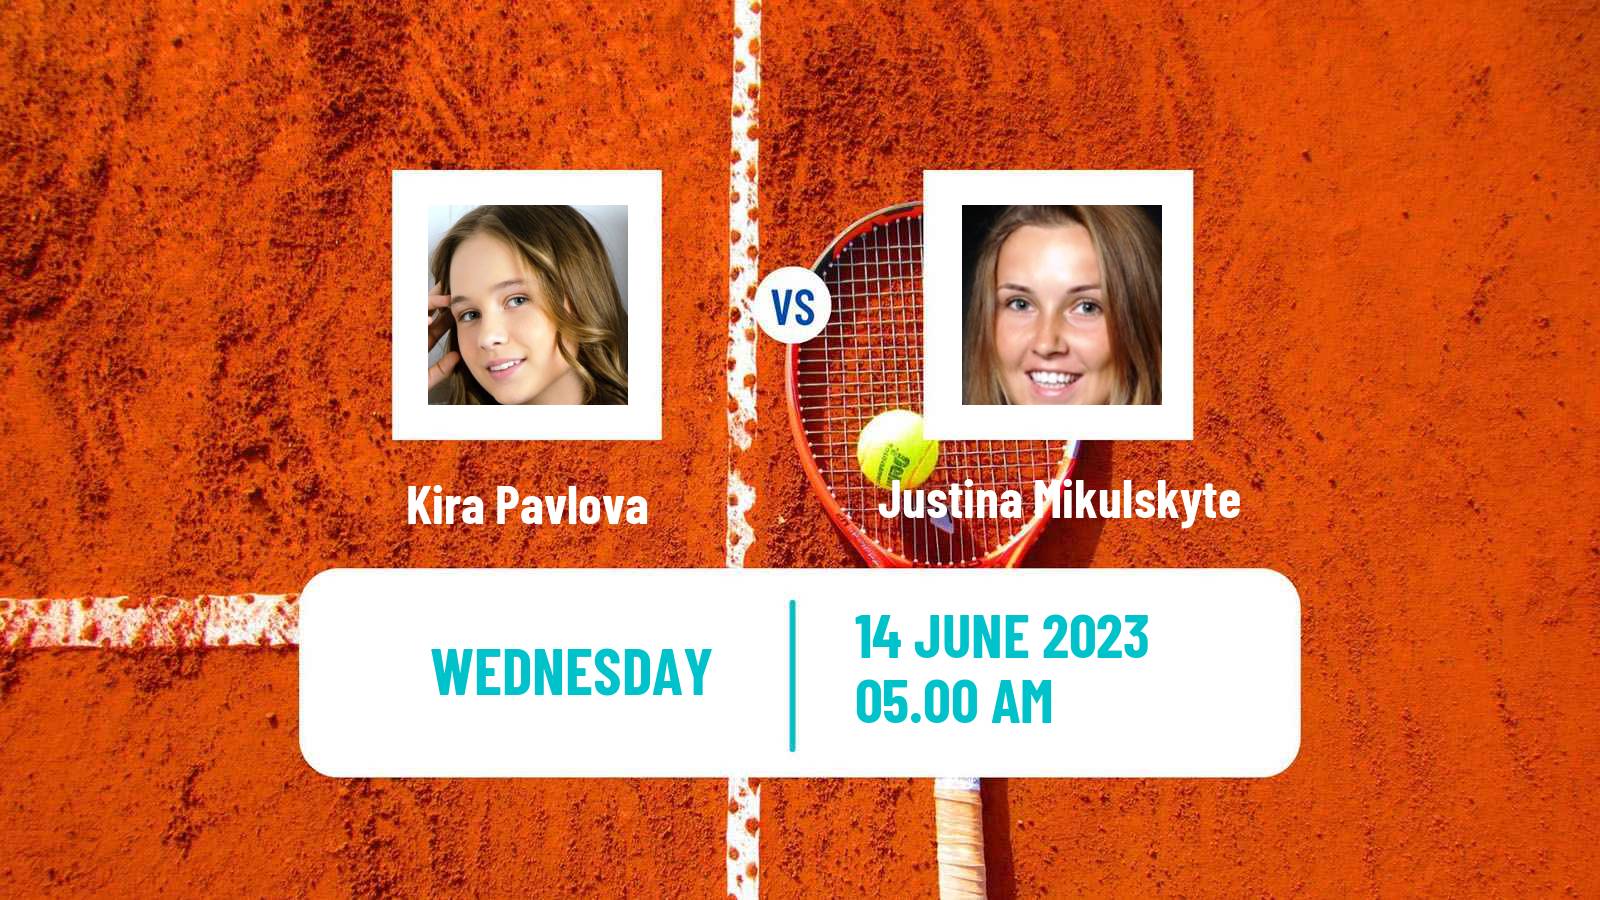 Tennis ITF W60 Madrid Women Kira Pavlova - Justina Mikulskyte